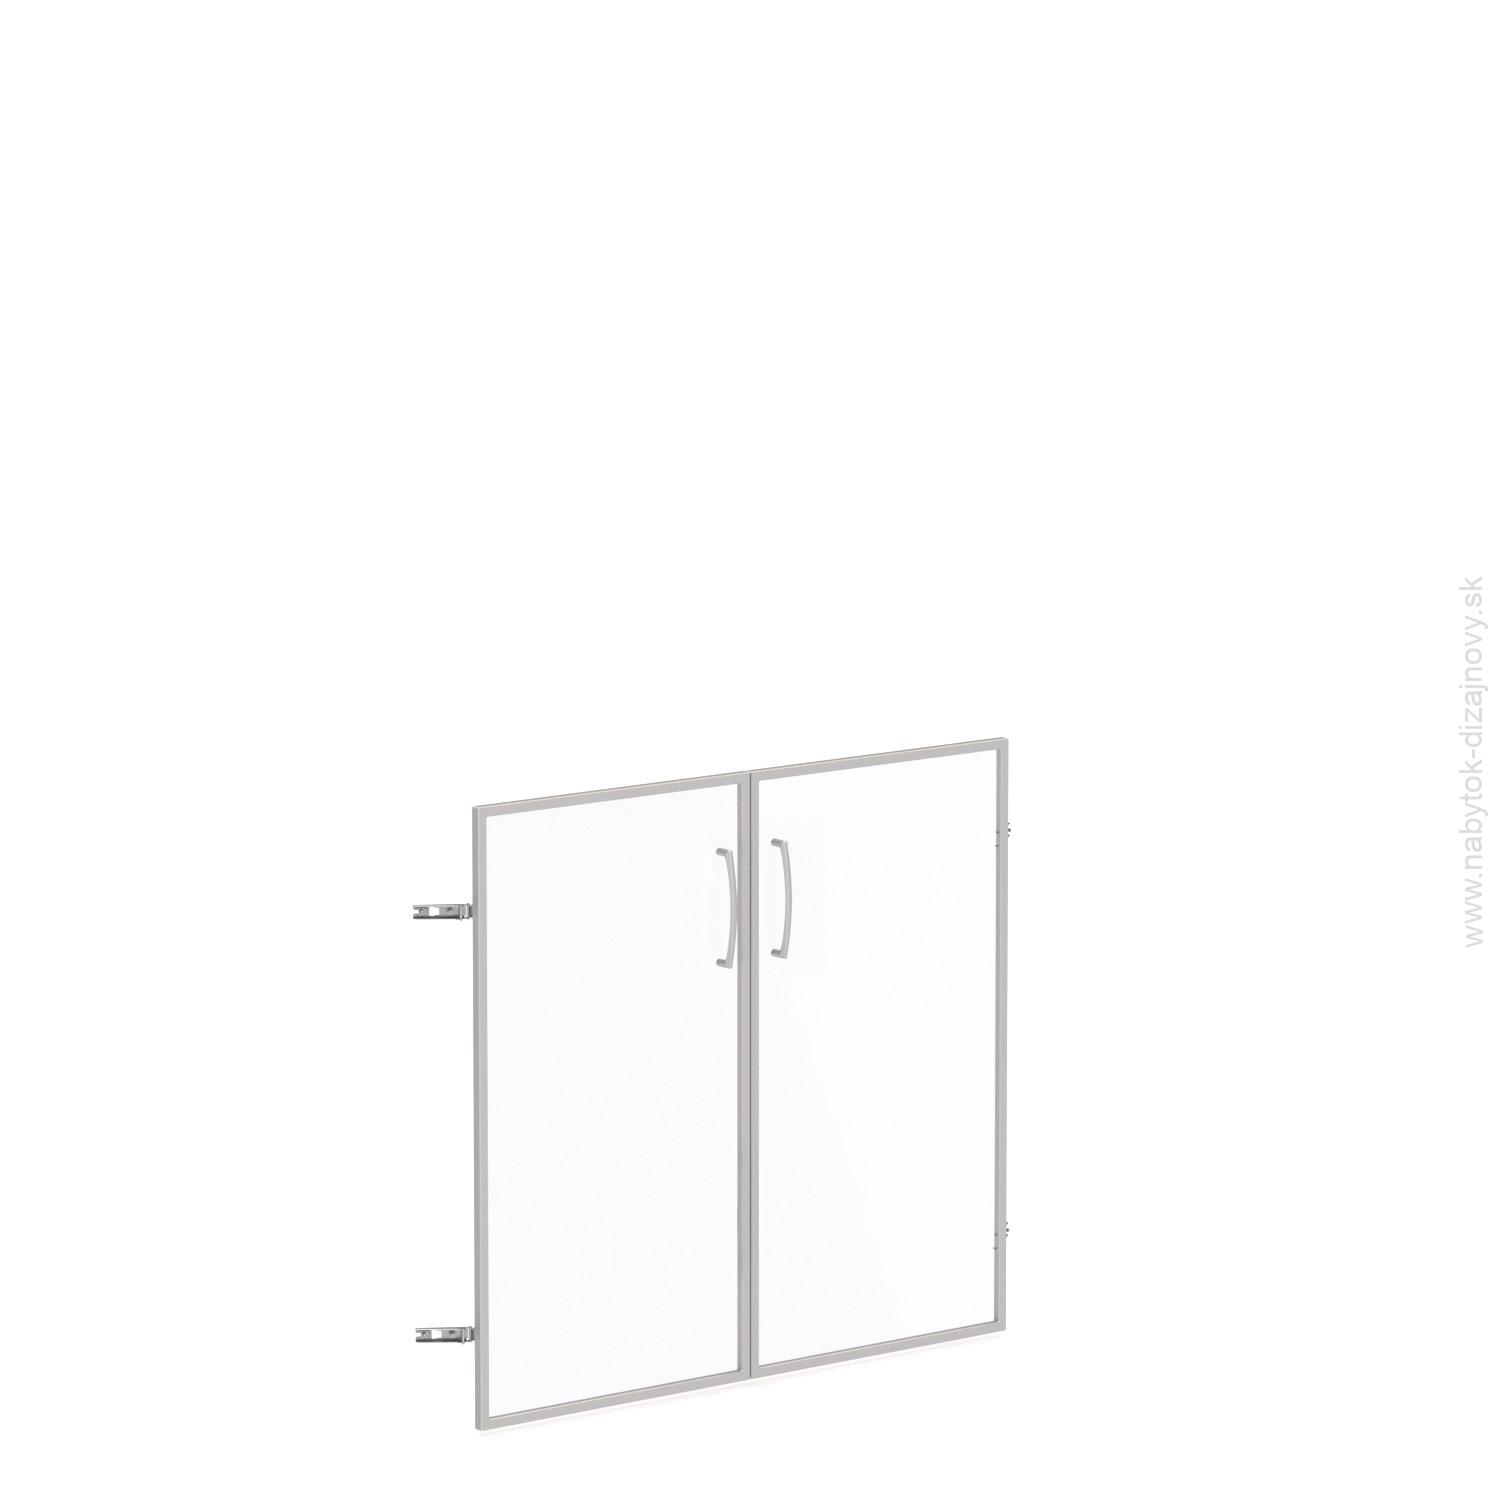 Sklenené dvere v AL ráme, výška 69,8cm, šírka 78,6/118,6cm